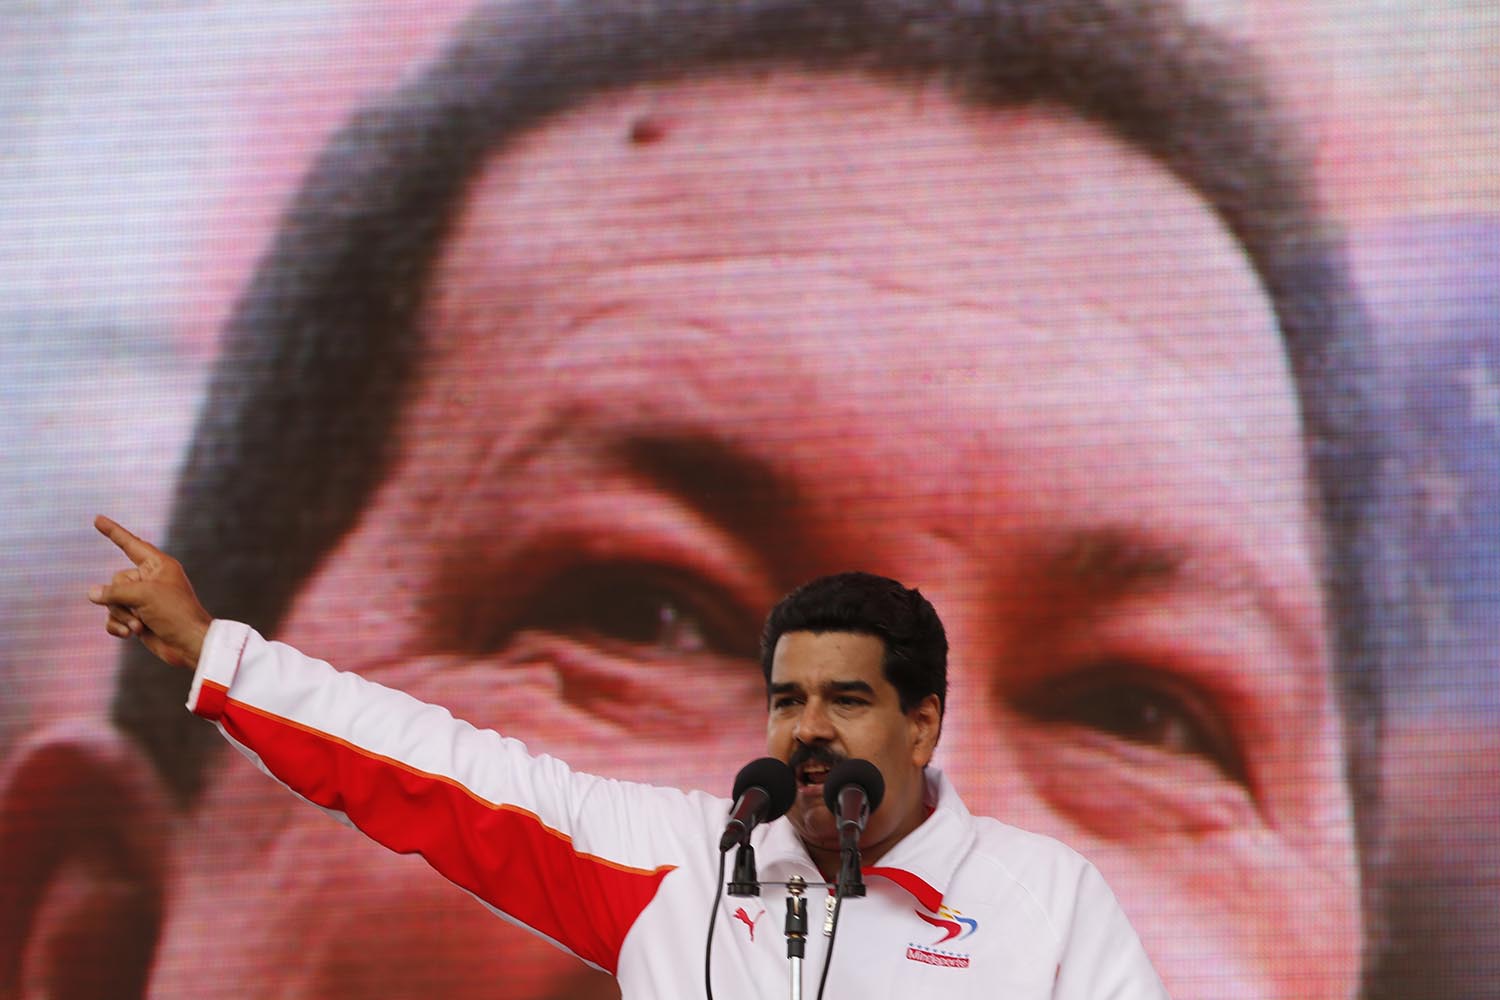 Especial Maduro. El presidente ha logrado ‘poderes especiales’ para gobernar Venezuela